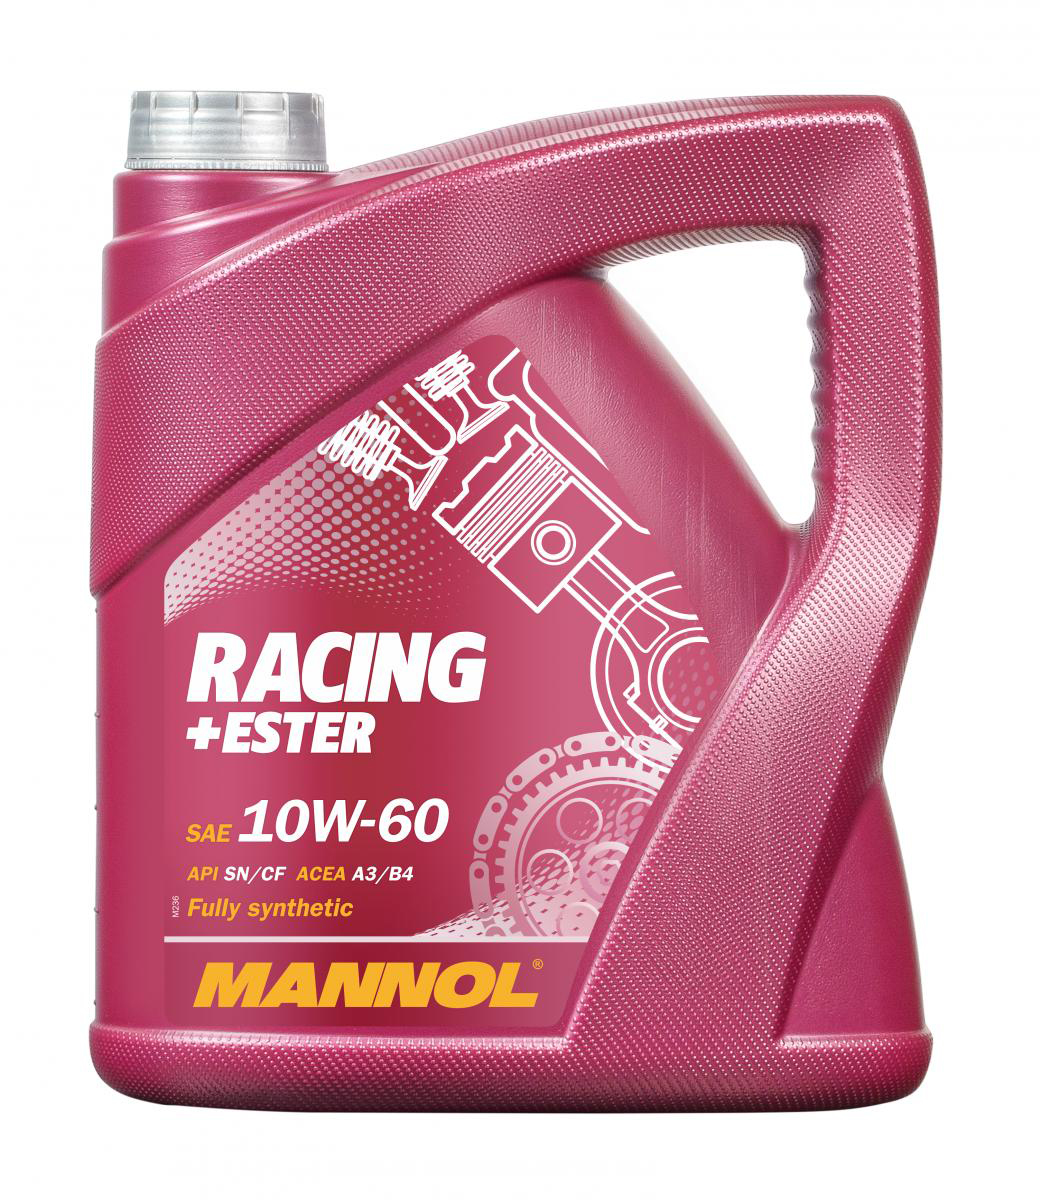 Racing+Ester 10W-60